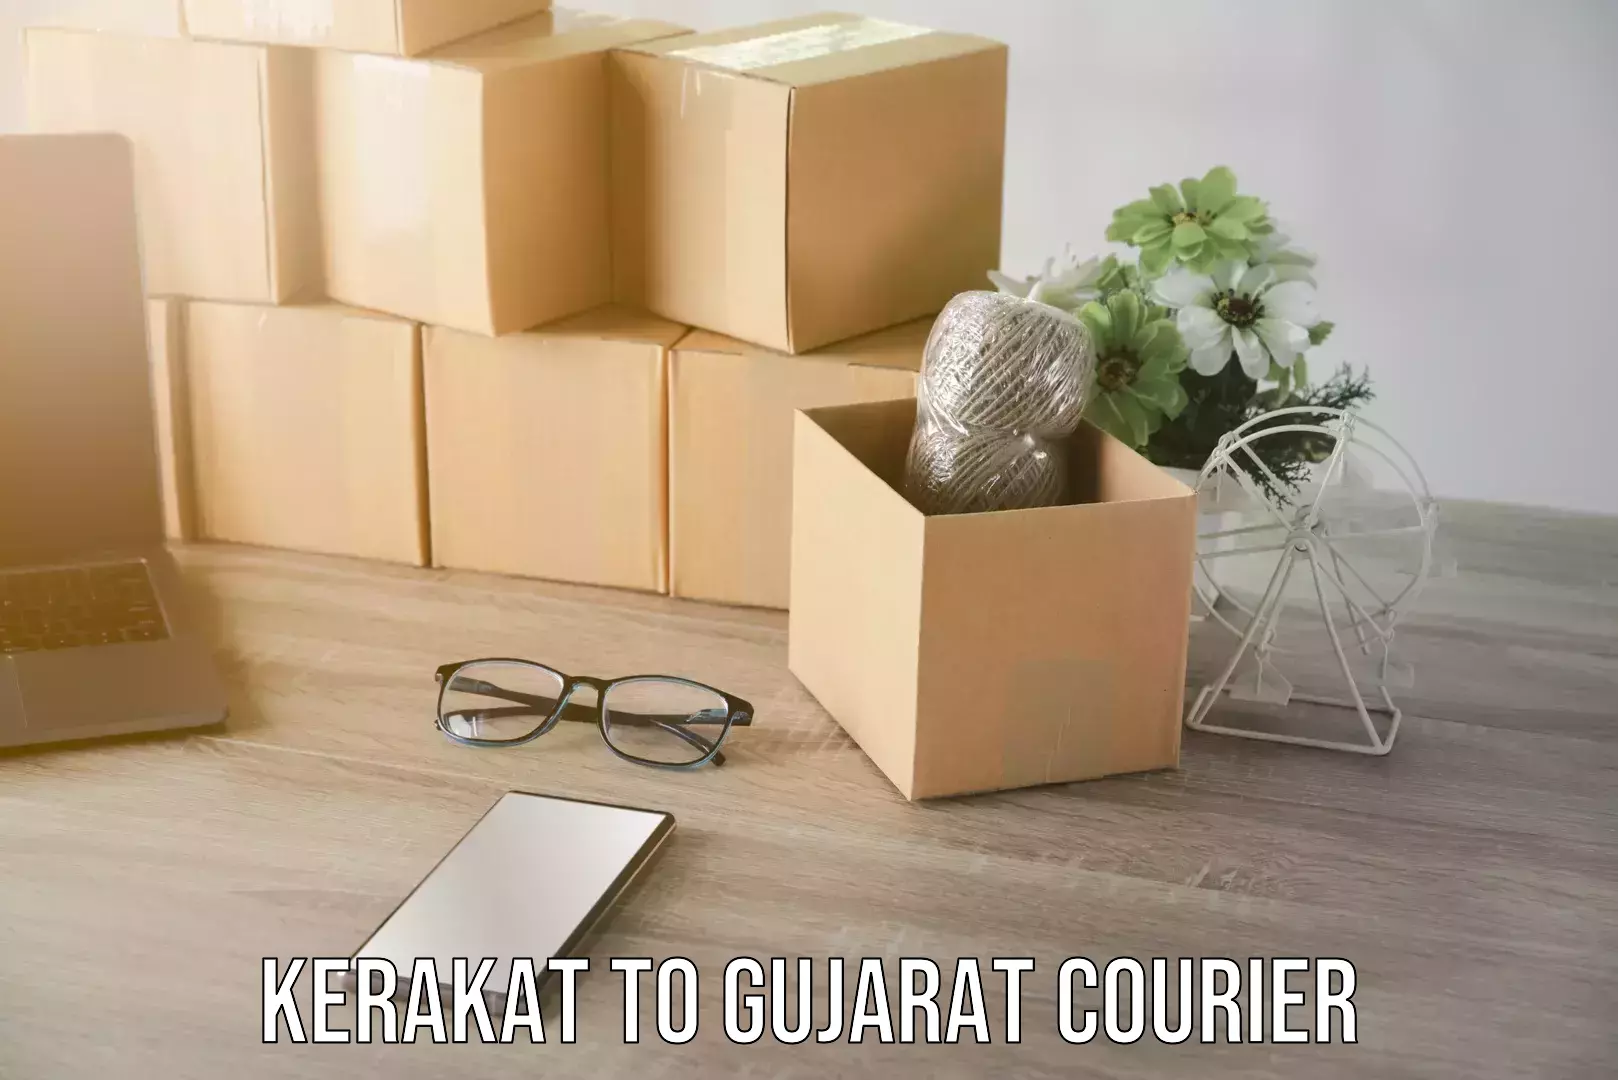 Local household moving Kerakat to Gujarat